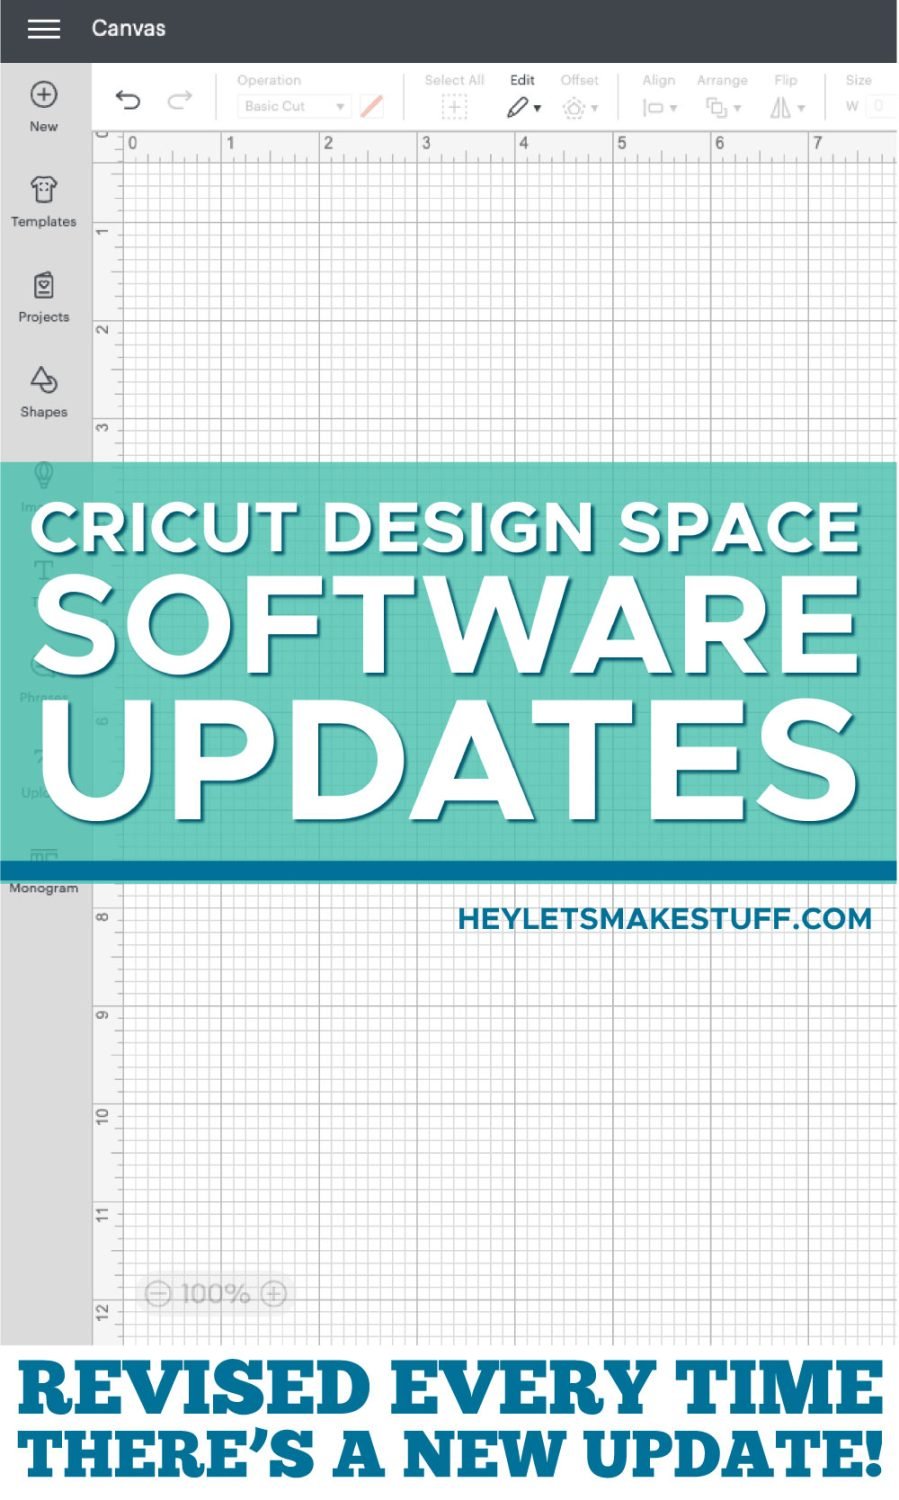 Cricut Design Space Updates pin